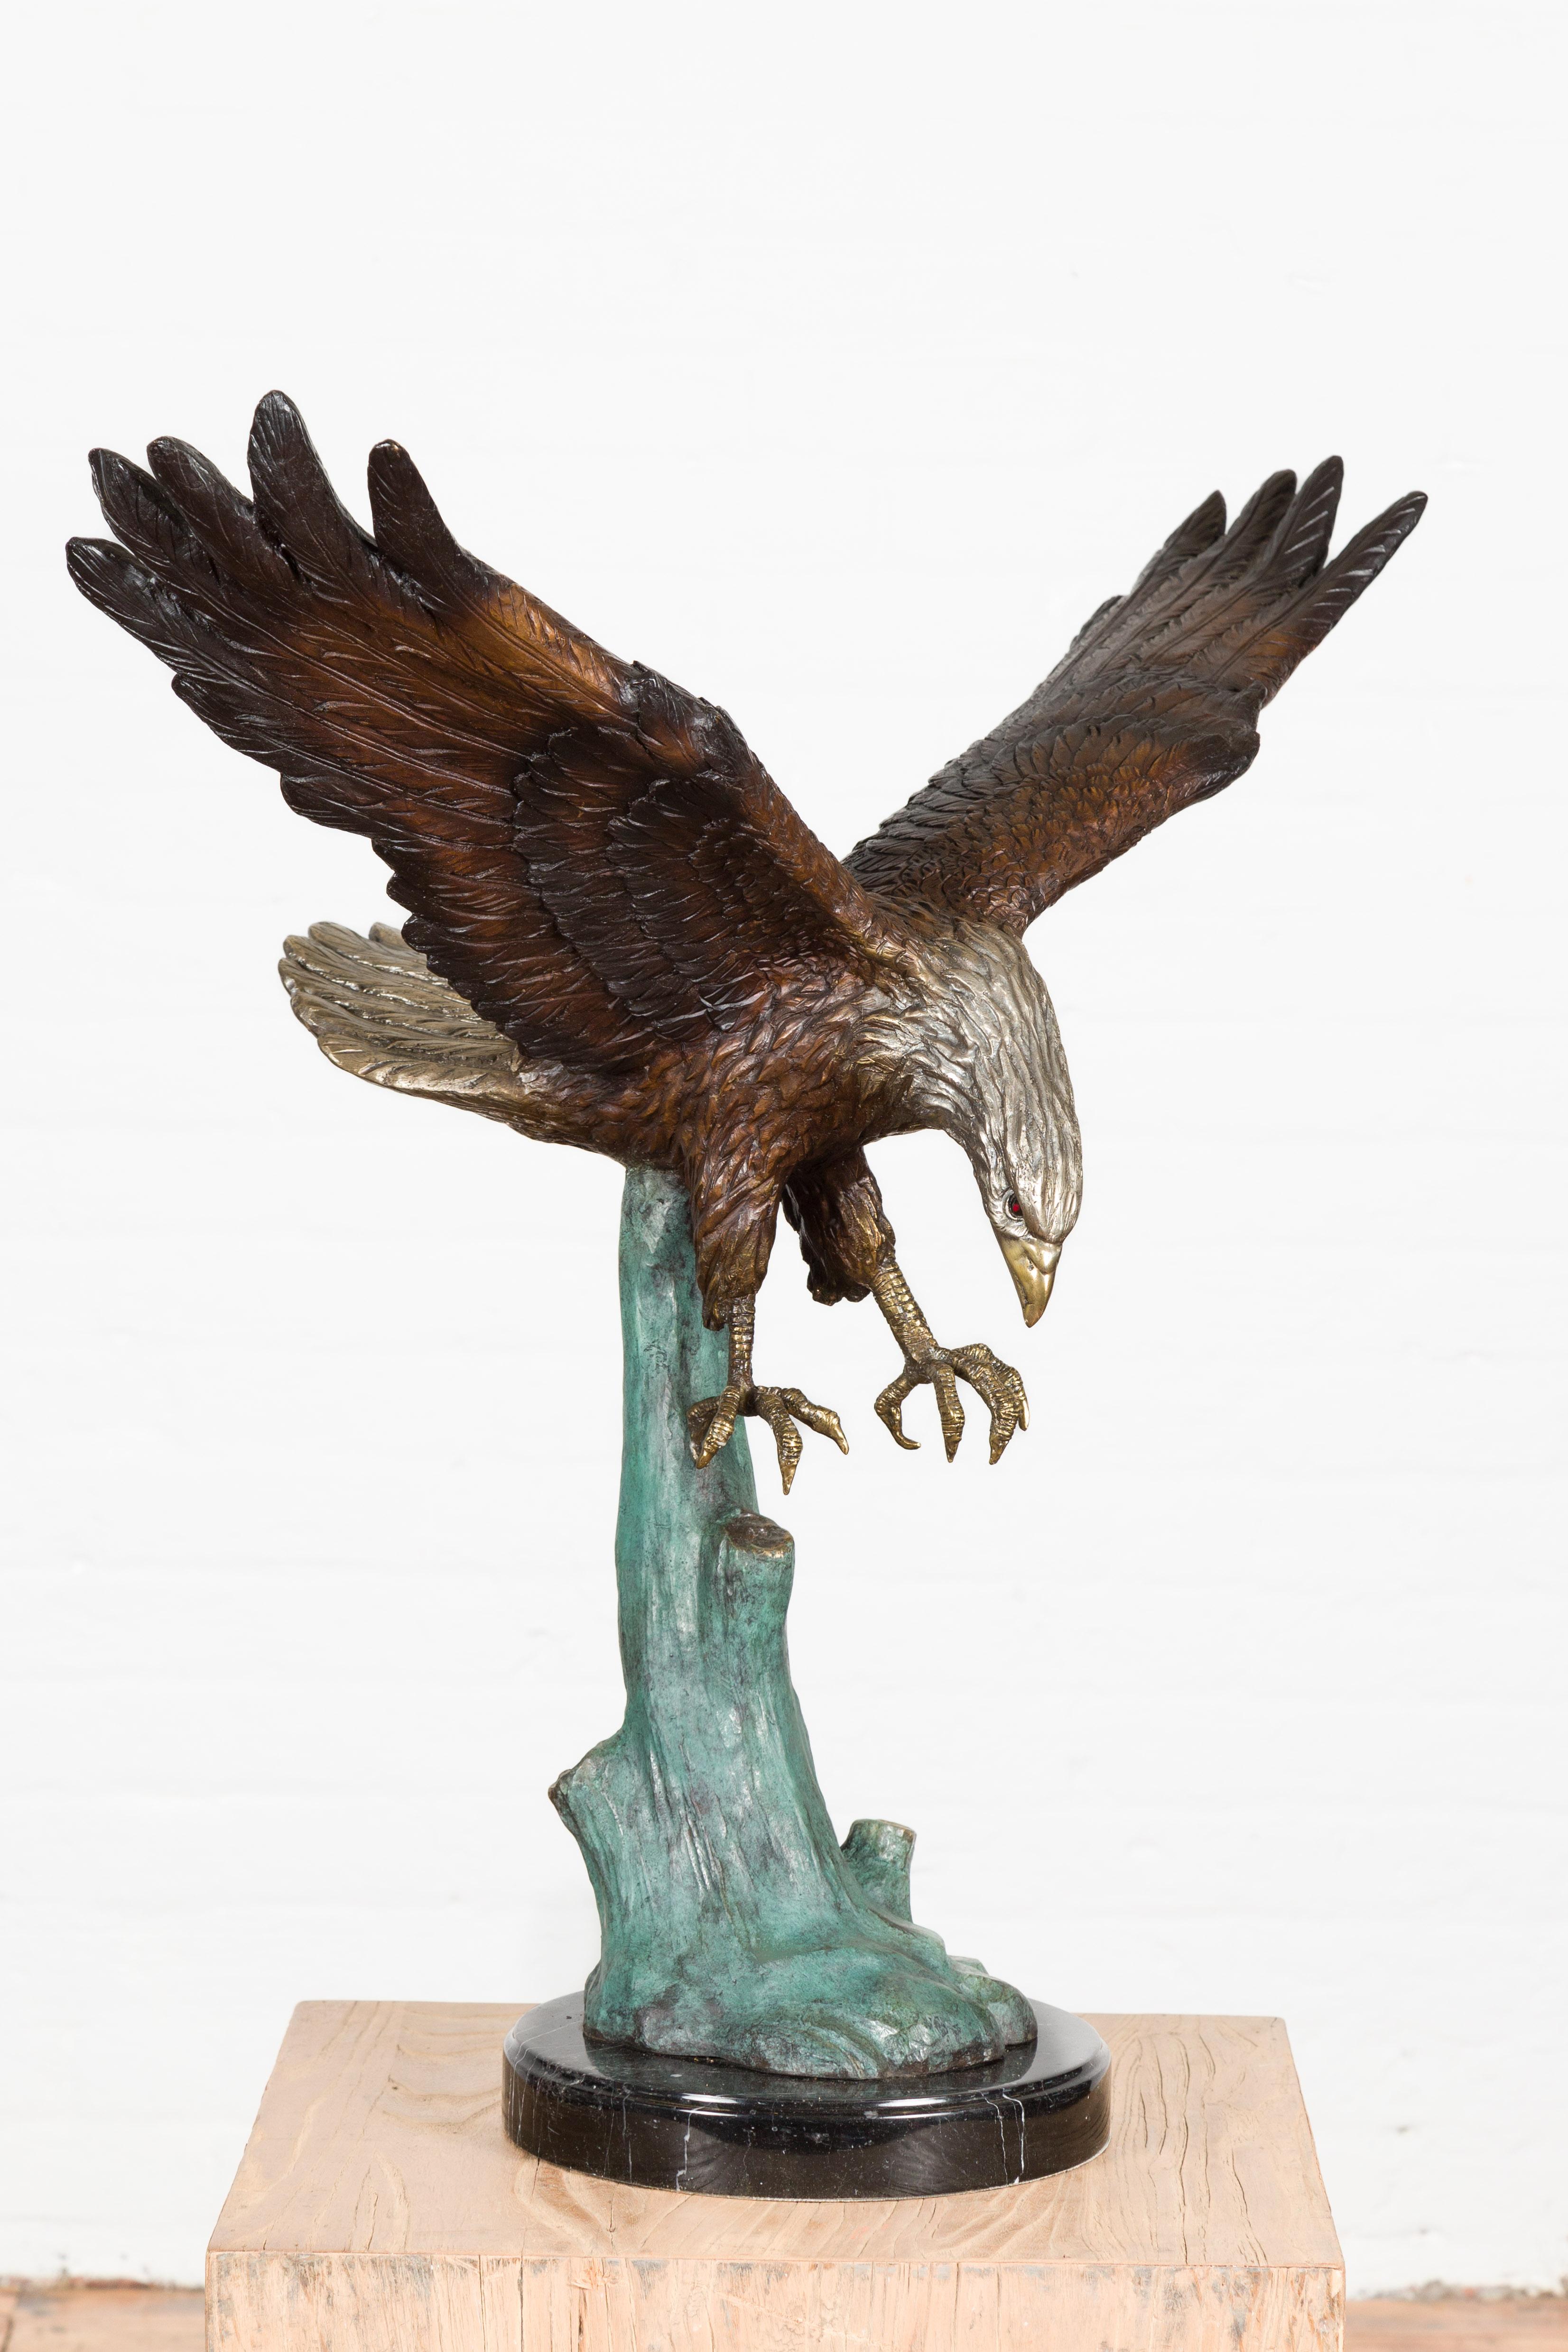 Sculpture en bronze coulée à la cire perdue représentant un aigle plongeant, décollant d'un arbre sur une base en marbre noir. Cet article est disponible dès maintenant et il s'agit également d'une production en cours. Réalisée avec la technique